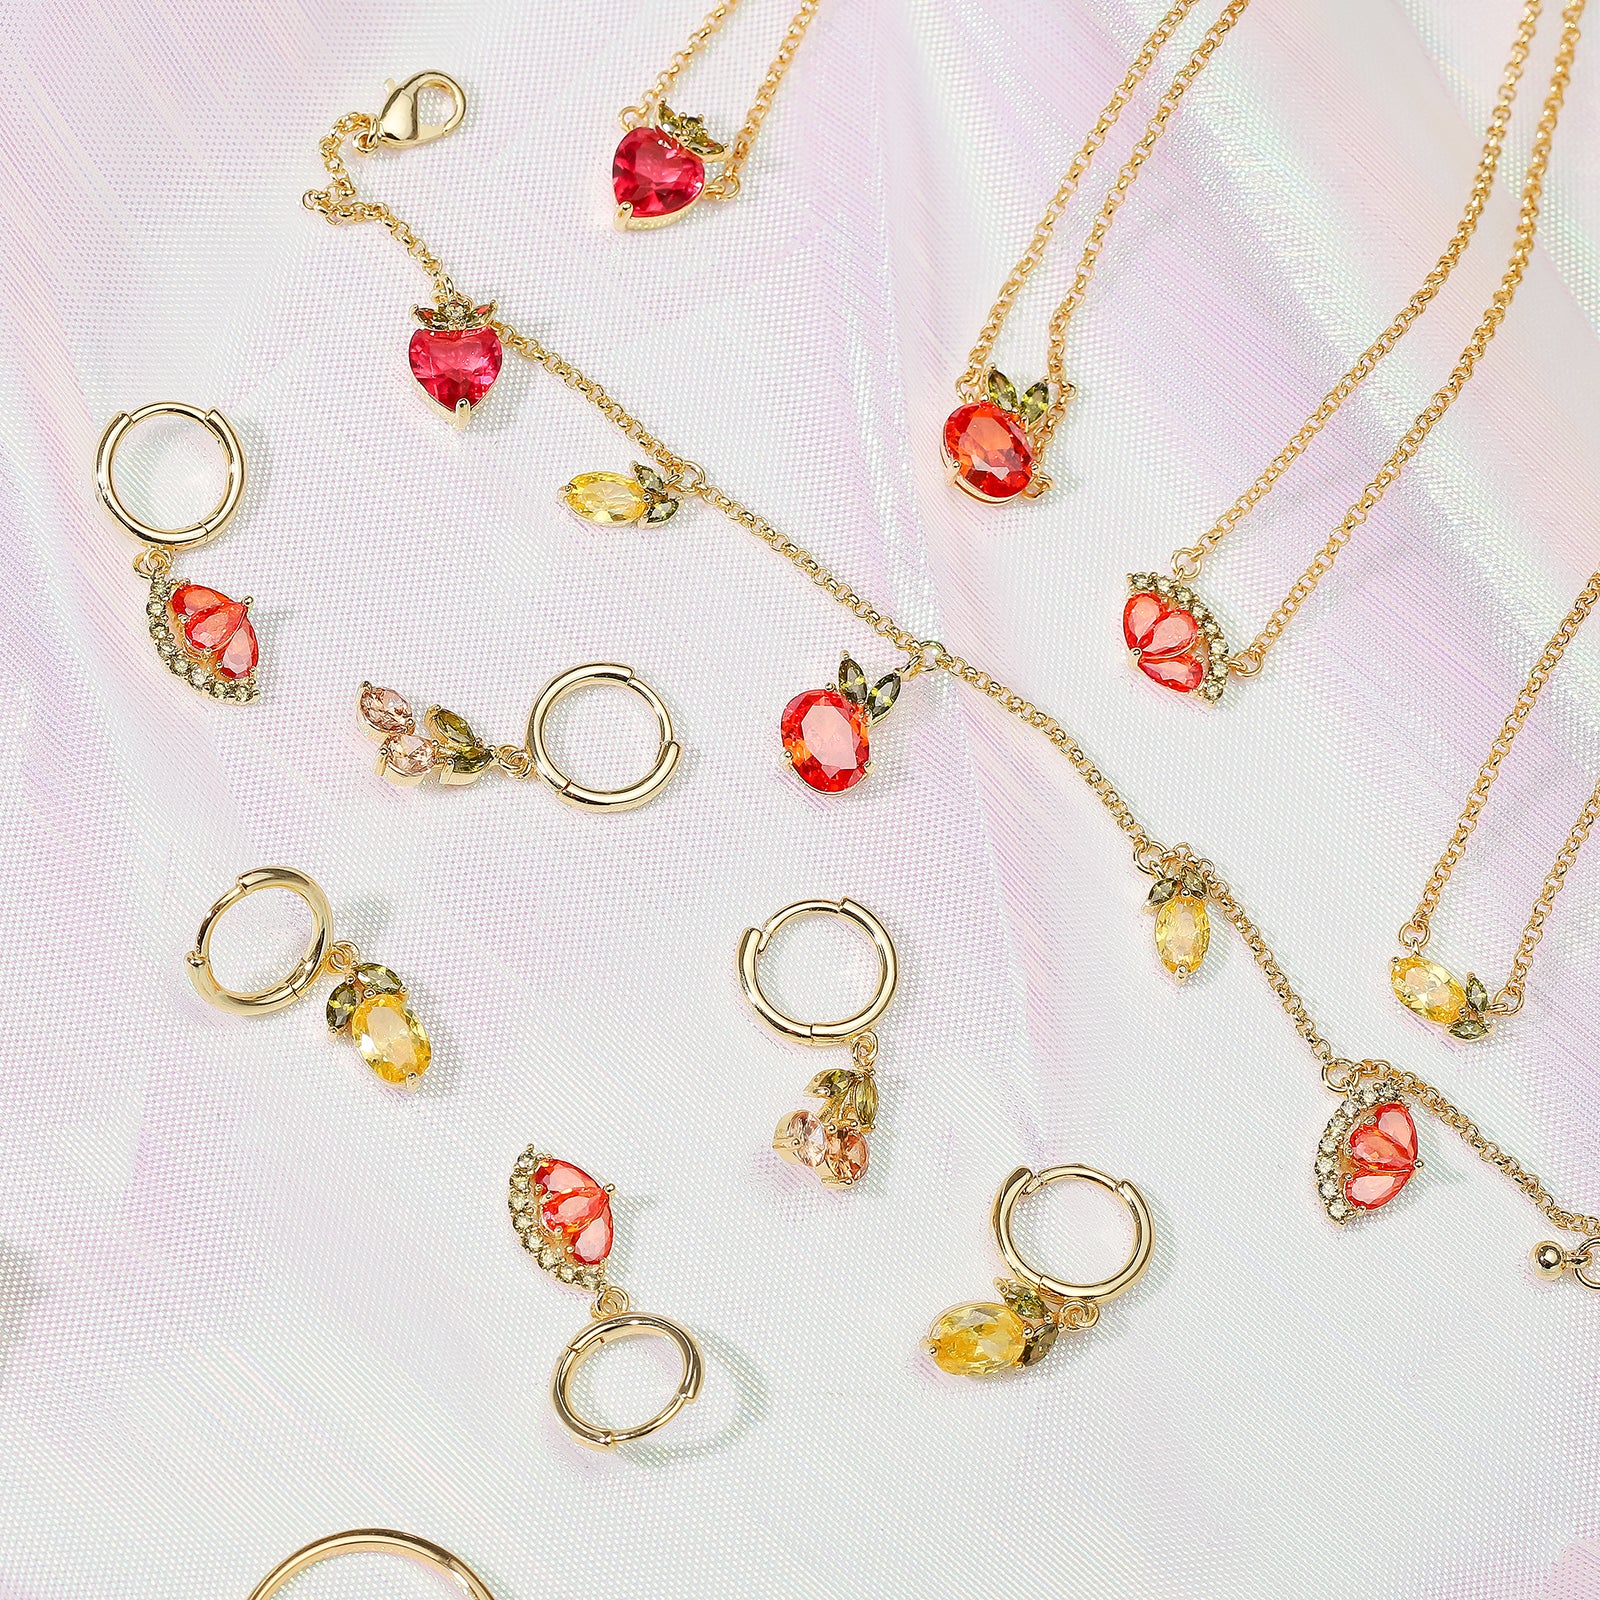 Strawberry Necklace Jewelry Set